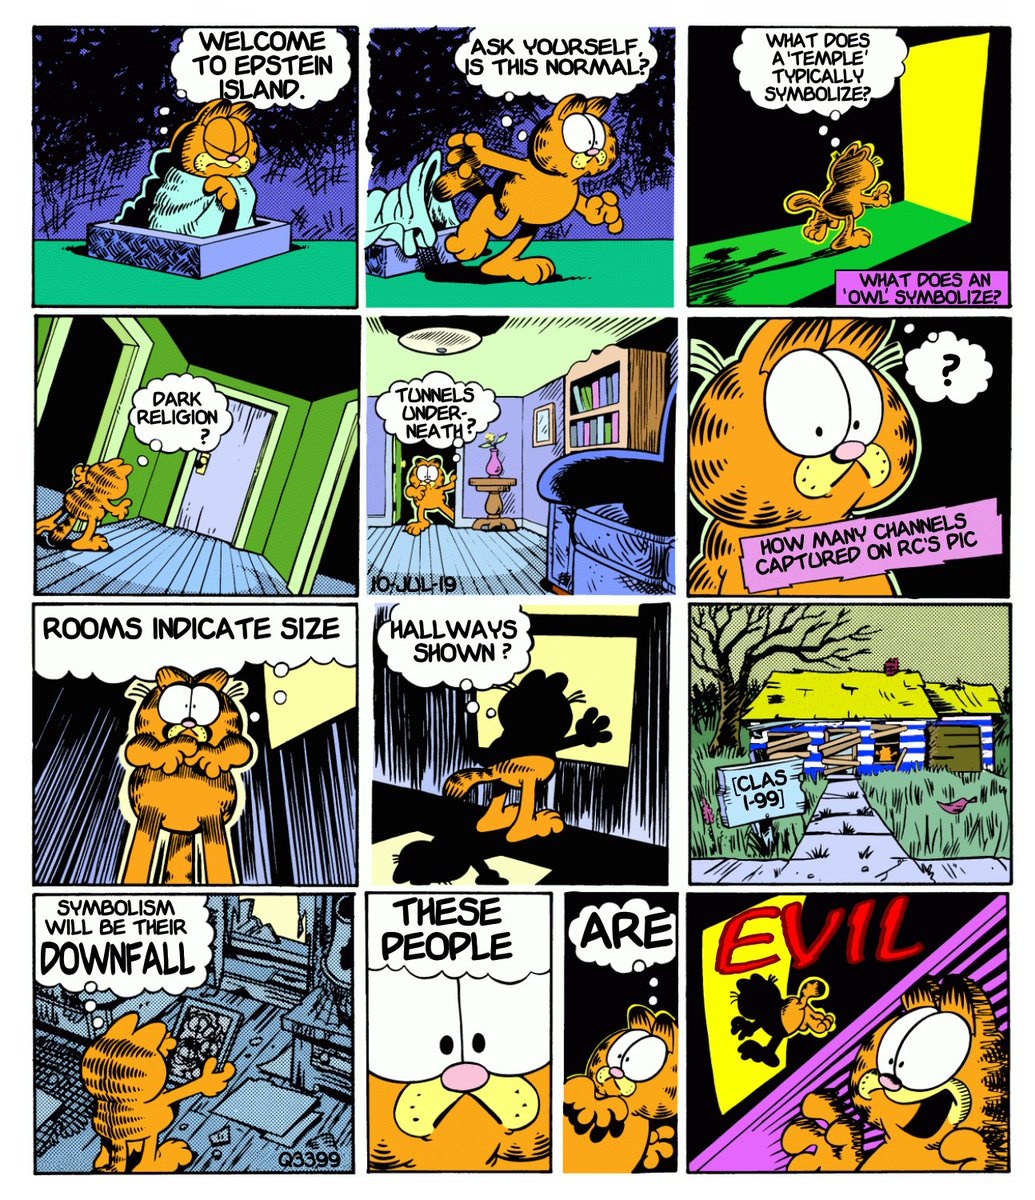 Q Drops as Garfield stripsQ3399 10 Jul 2019